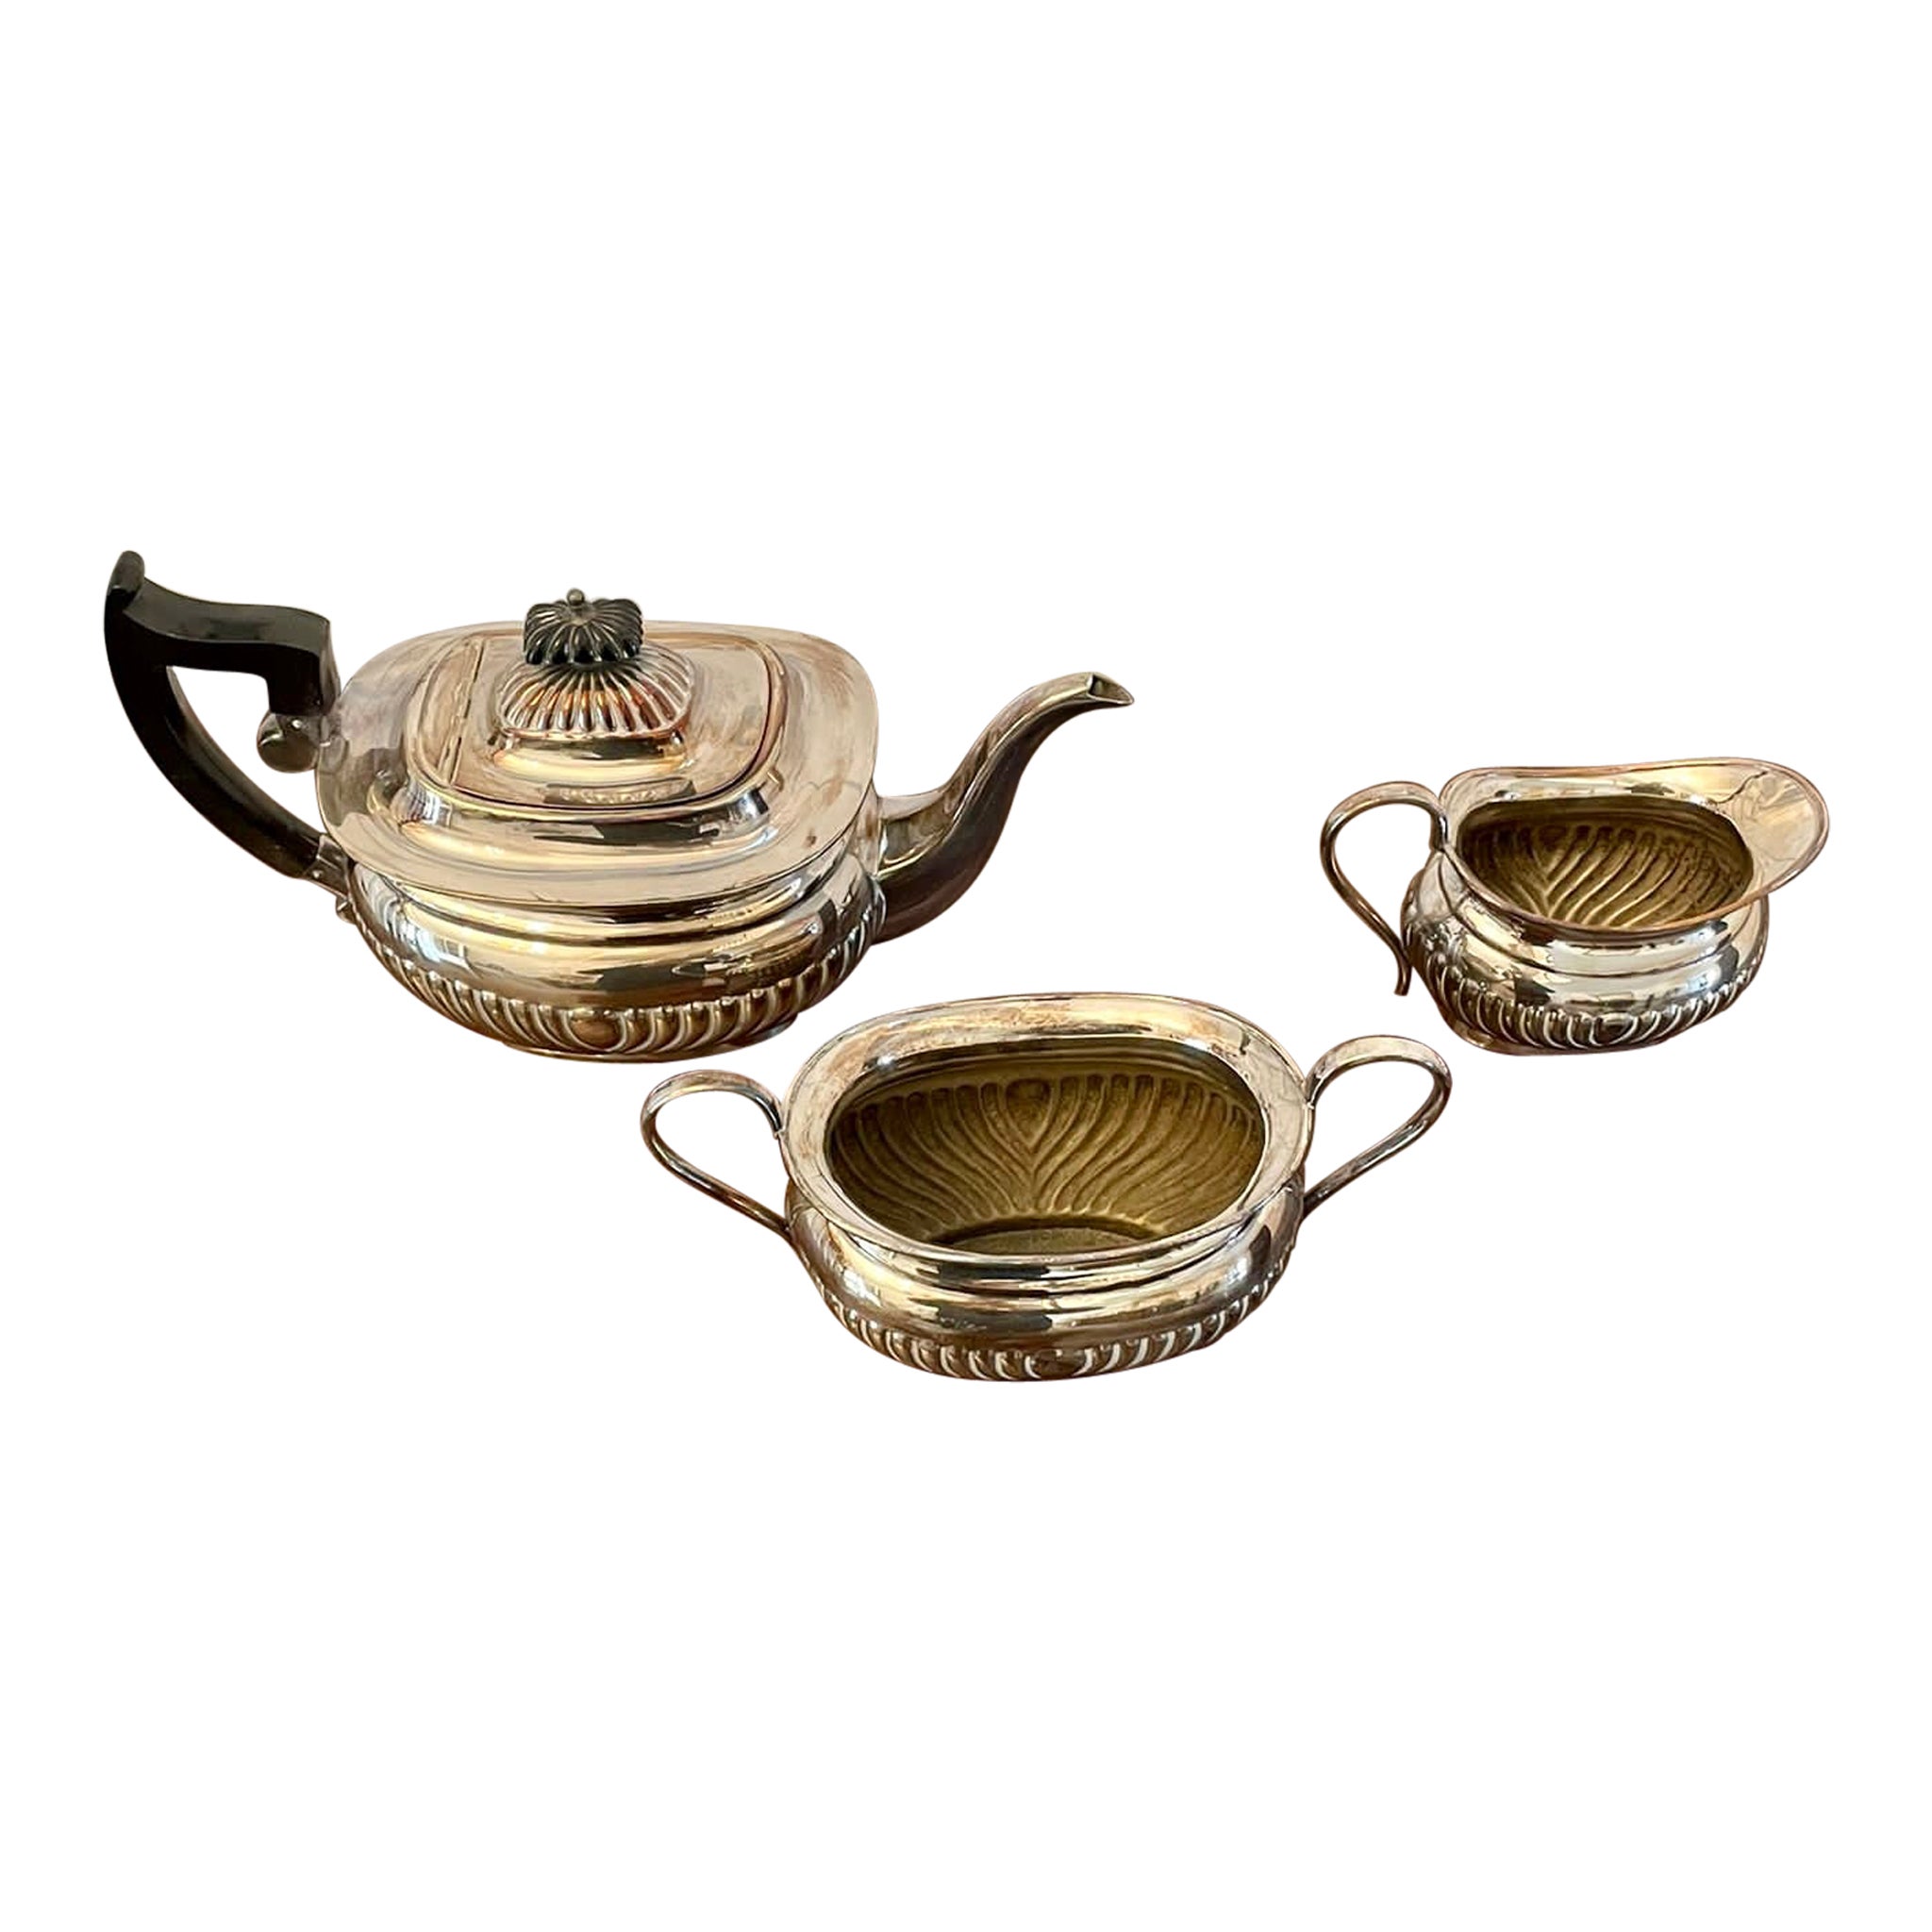  Service à thé ancien de qualité édouardienne en métal argenté